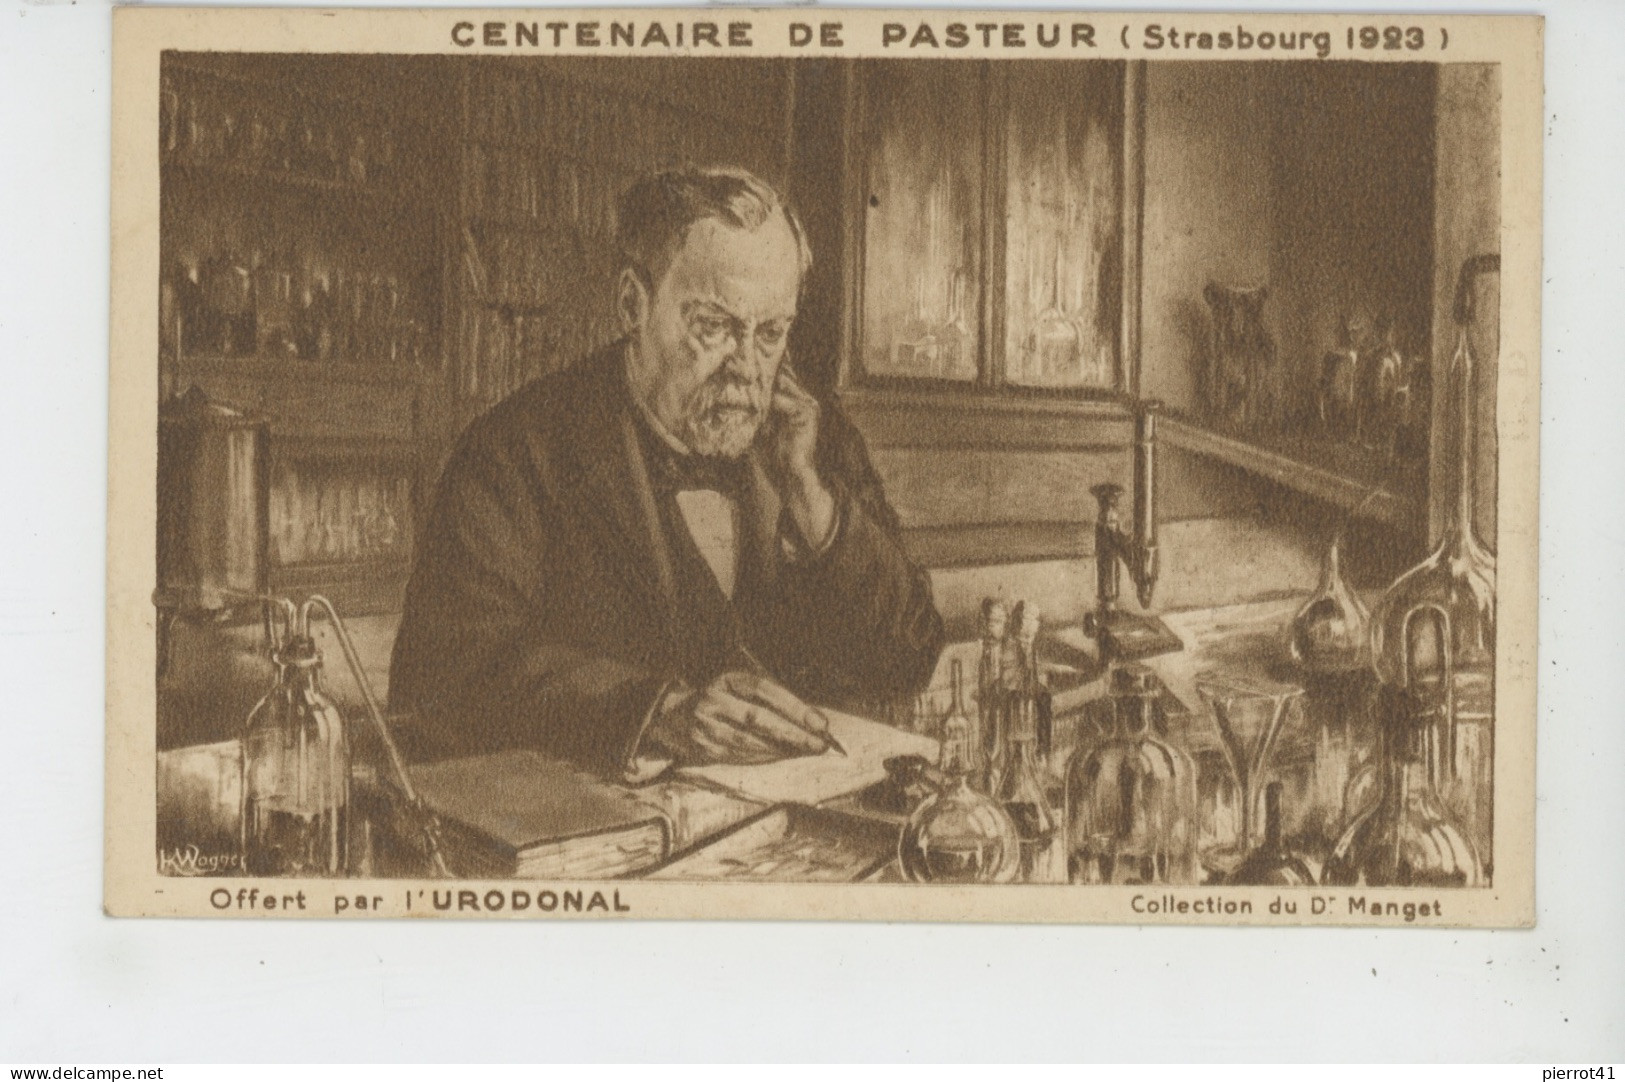 CELEBRITES - CENTENAIRE DE PASTEUR (Strasbourg 1923) - Carte Pub Pour Produit URODONAL - Avec Biographie De Pasteur - Prix Nobel